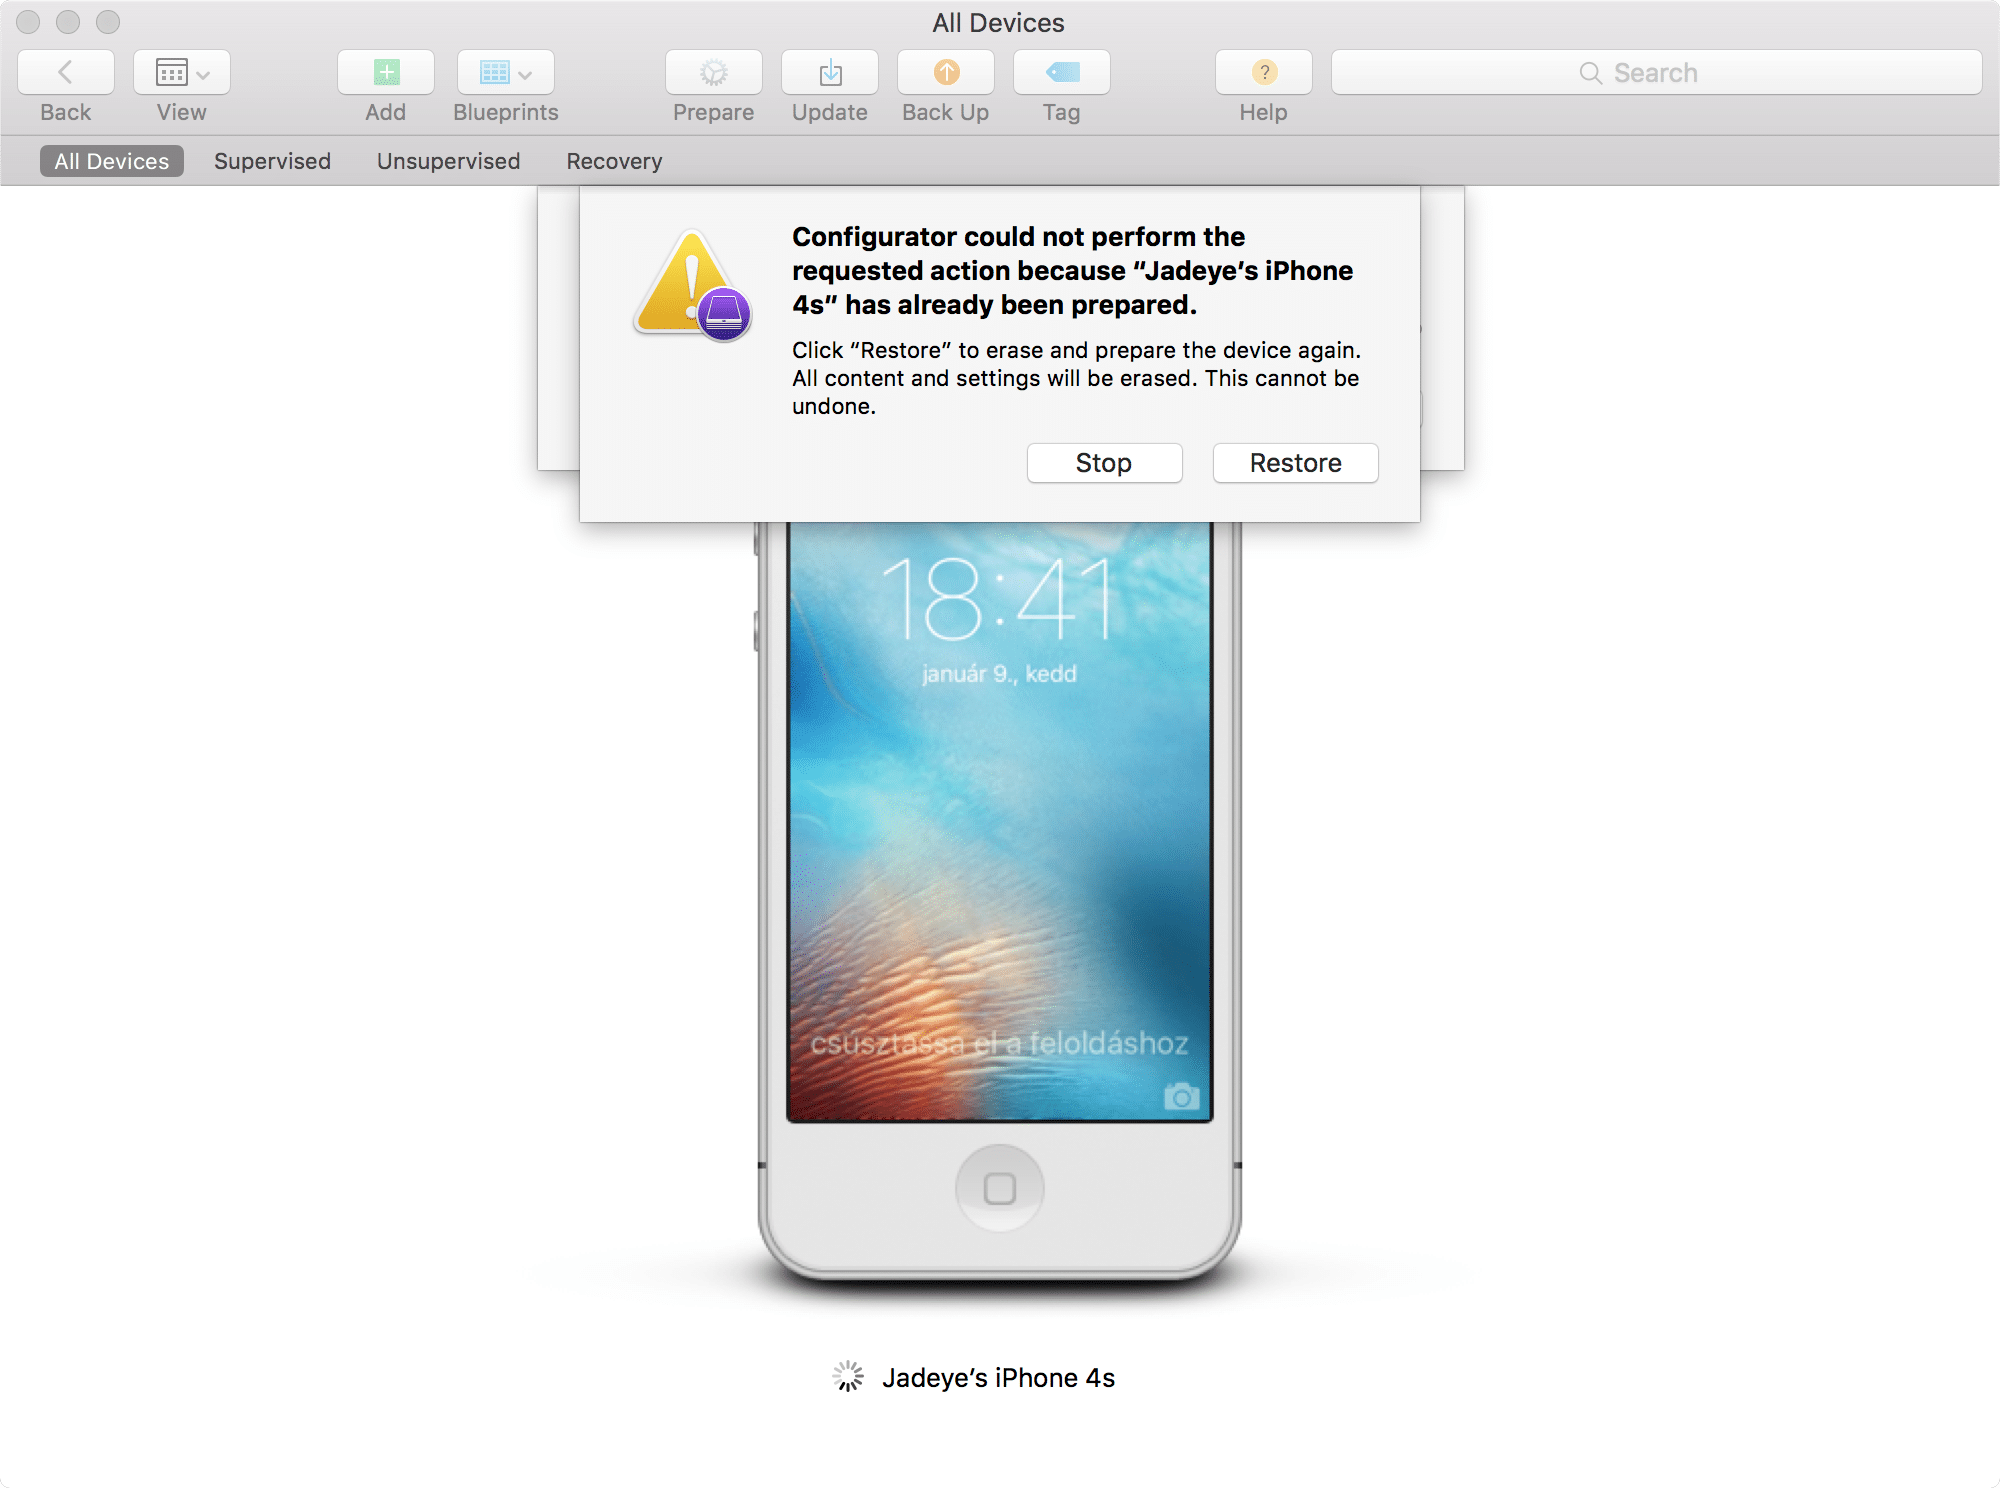 Kép: Apple Configurator: az eszköz felügyeletéhez a készülék szoftverének visszaállítása (restore) szükséges, amit jóvá kell hagynunk.